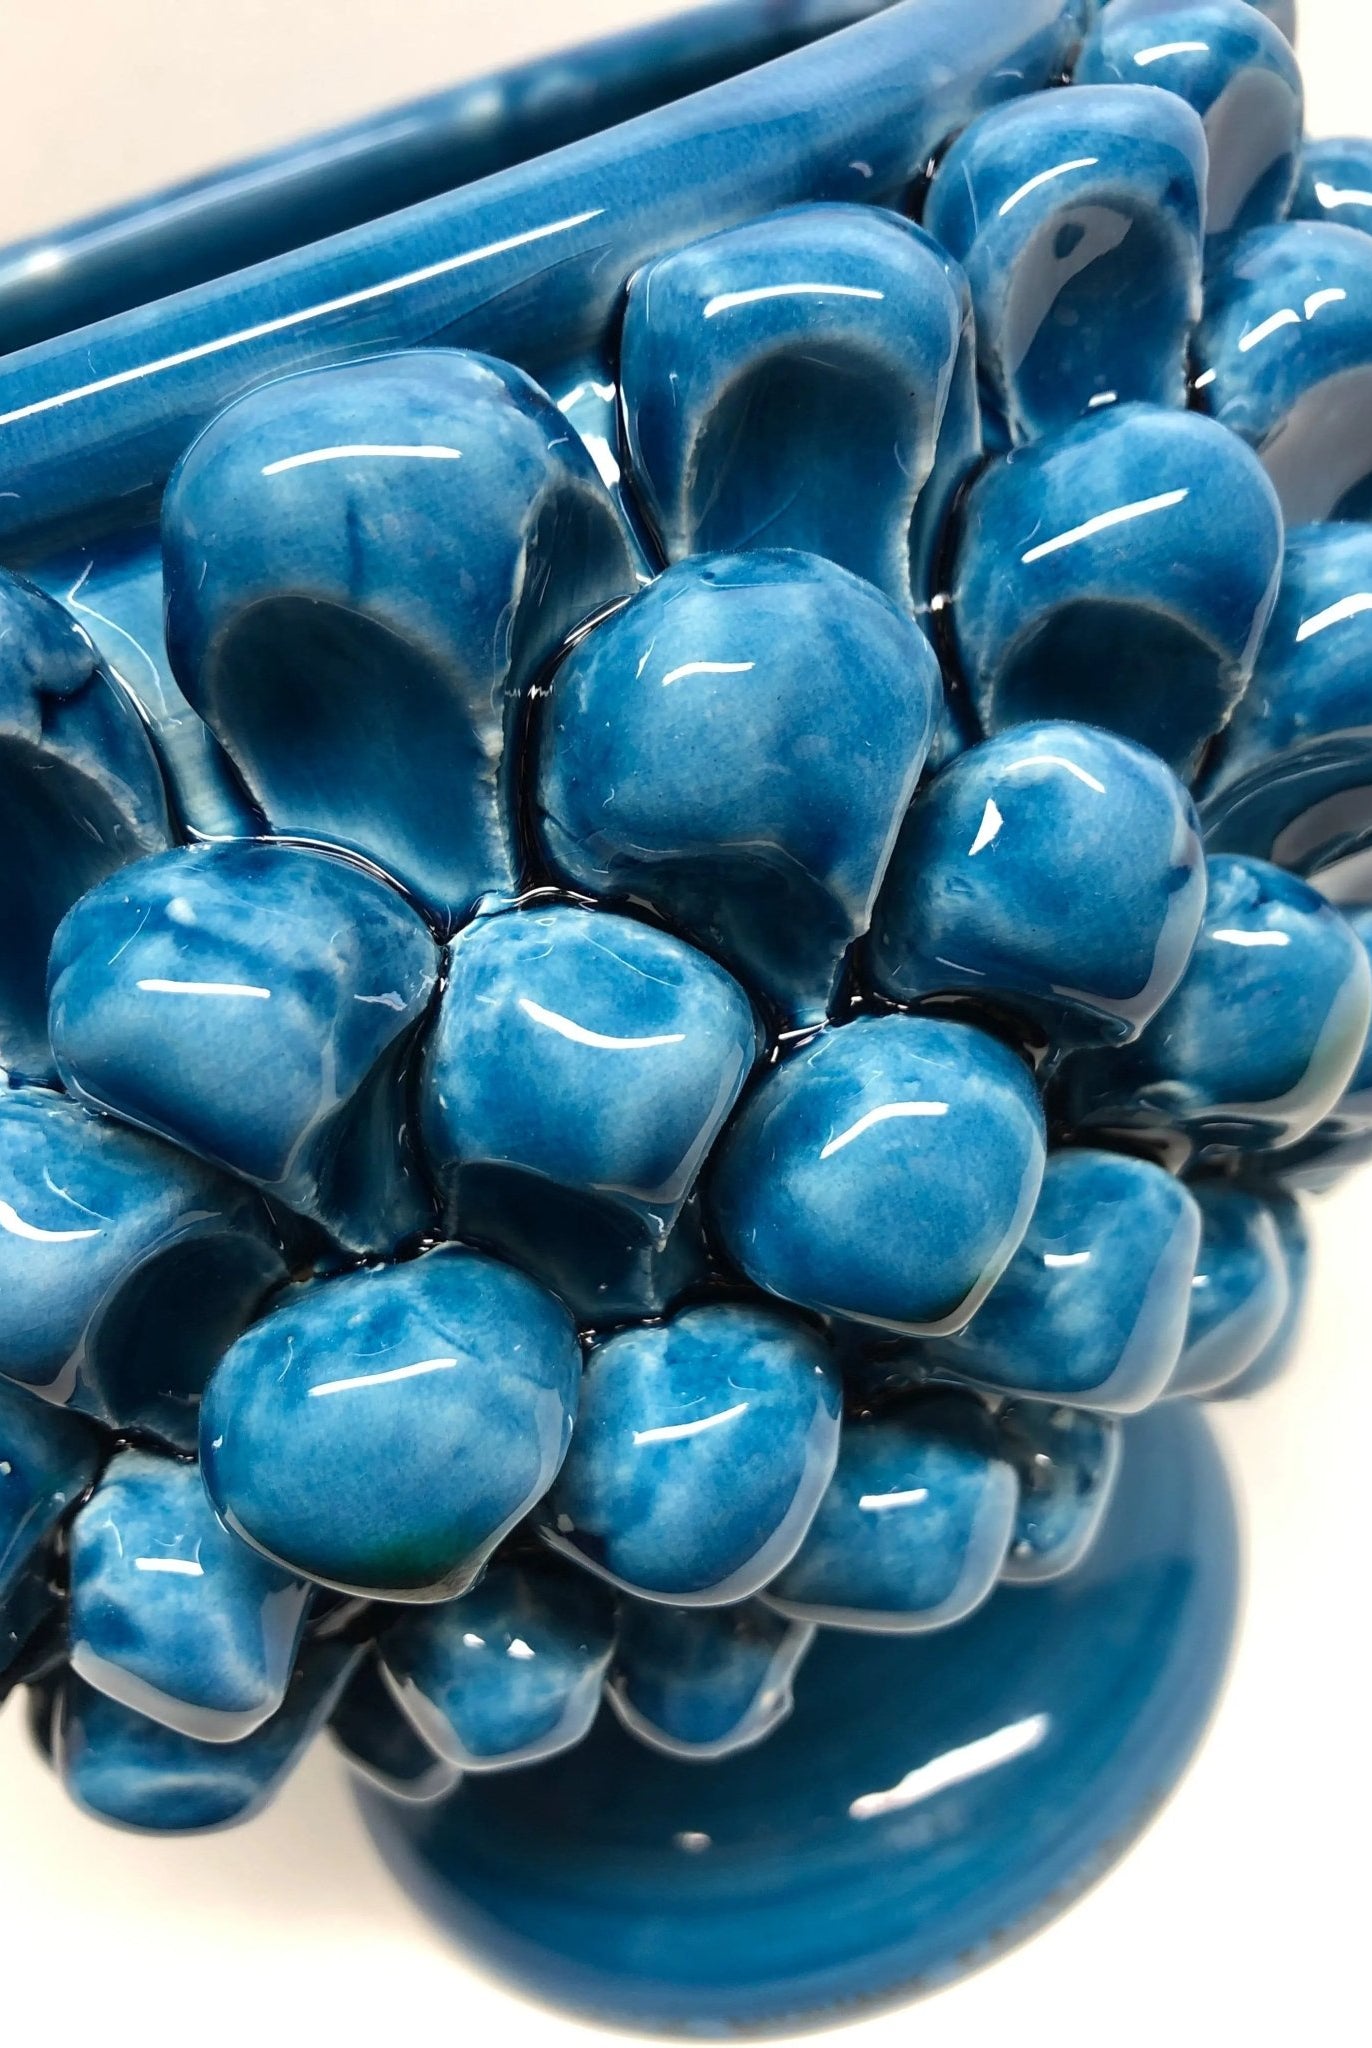 Portavaso Mezza Pigna Ceramica Caltagirone cm H.20 L.20 Artigianale Blu Cristallo DD CERAMICHE SICILIANE